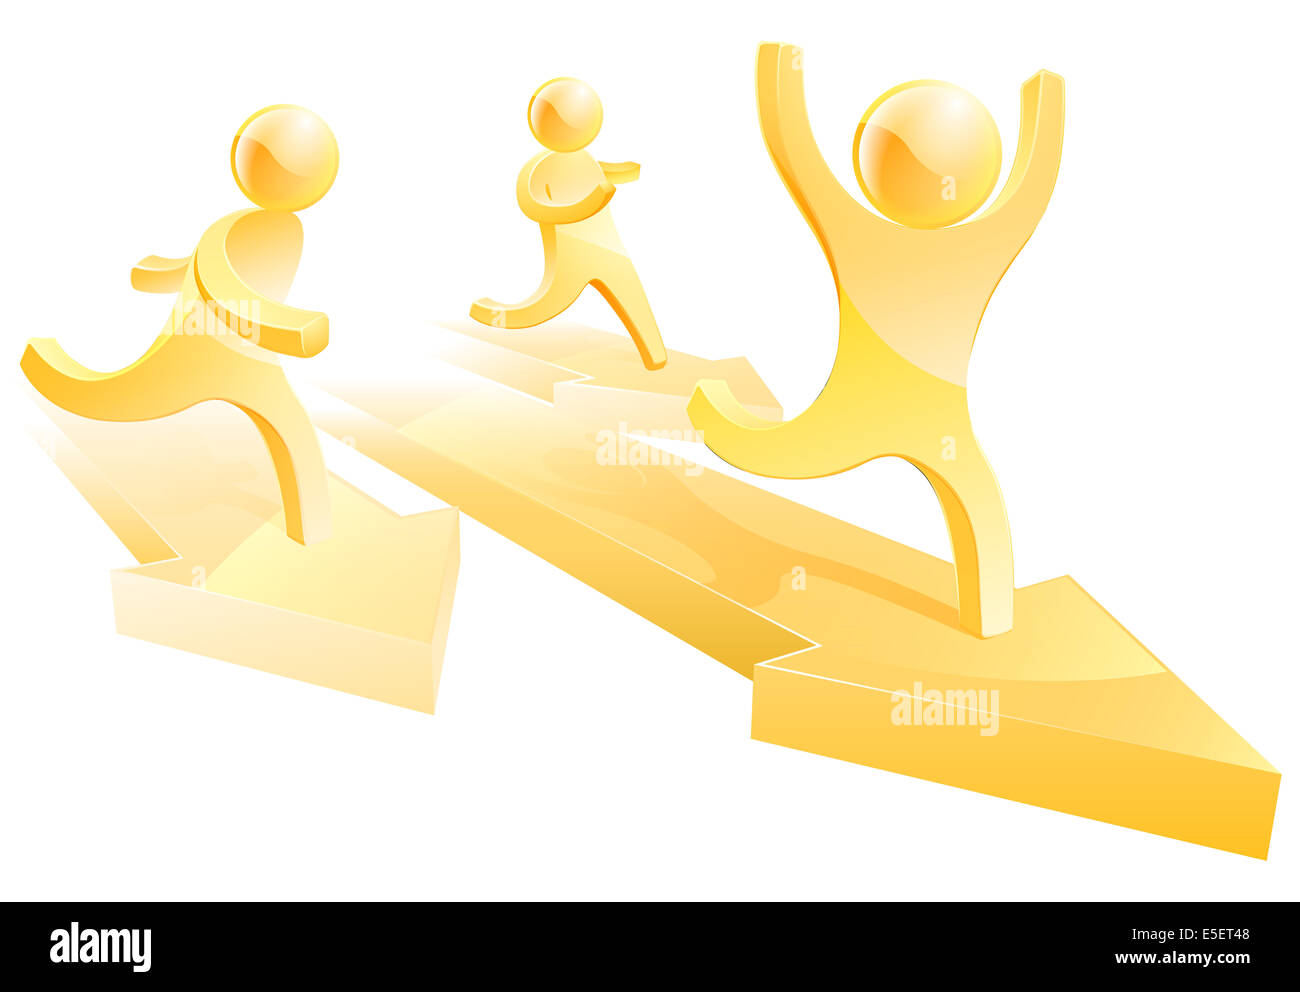 Gold Menschen ein Rennen auf Pfeile, Konzept für Business-Wettbewerb Stockfoto